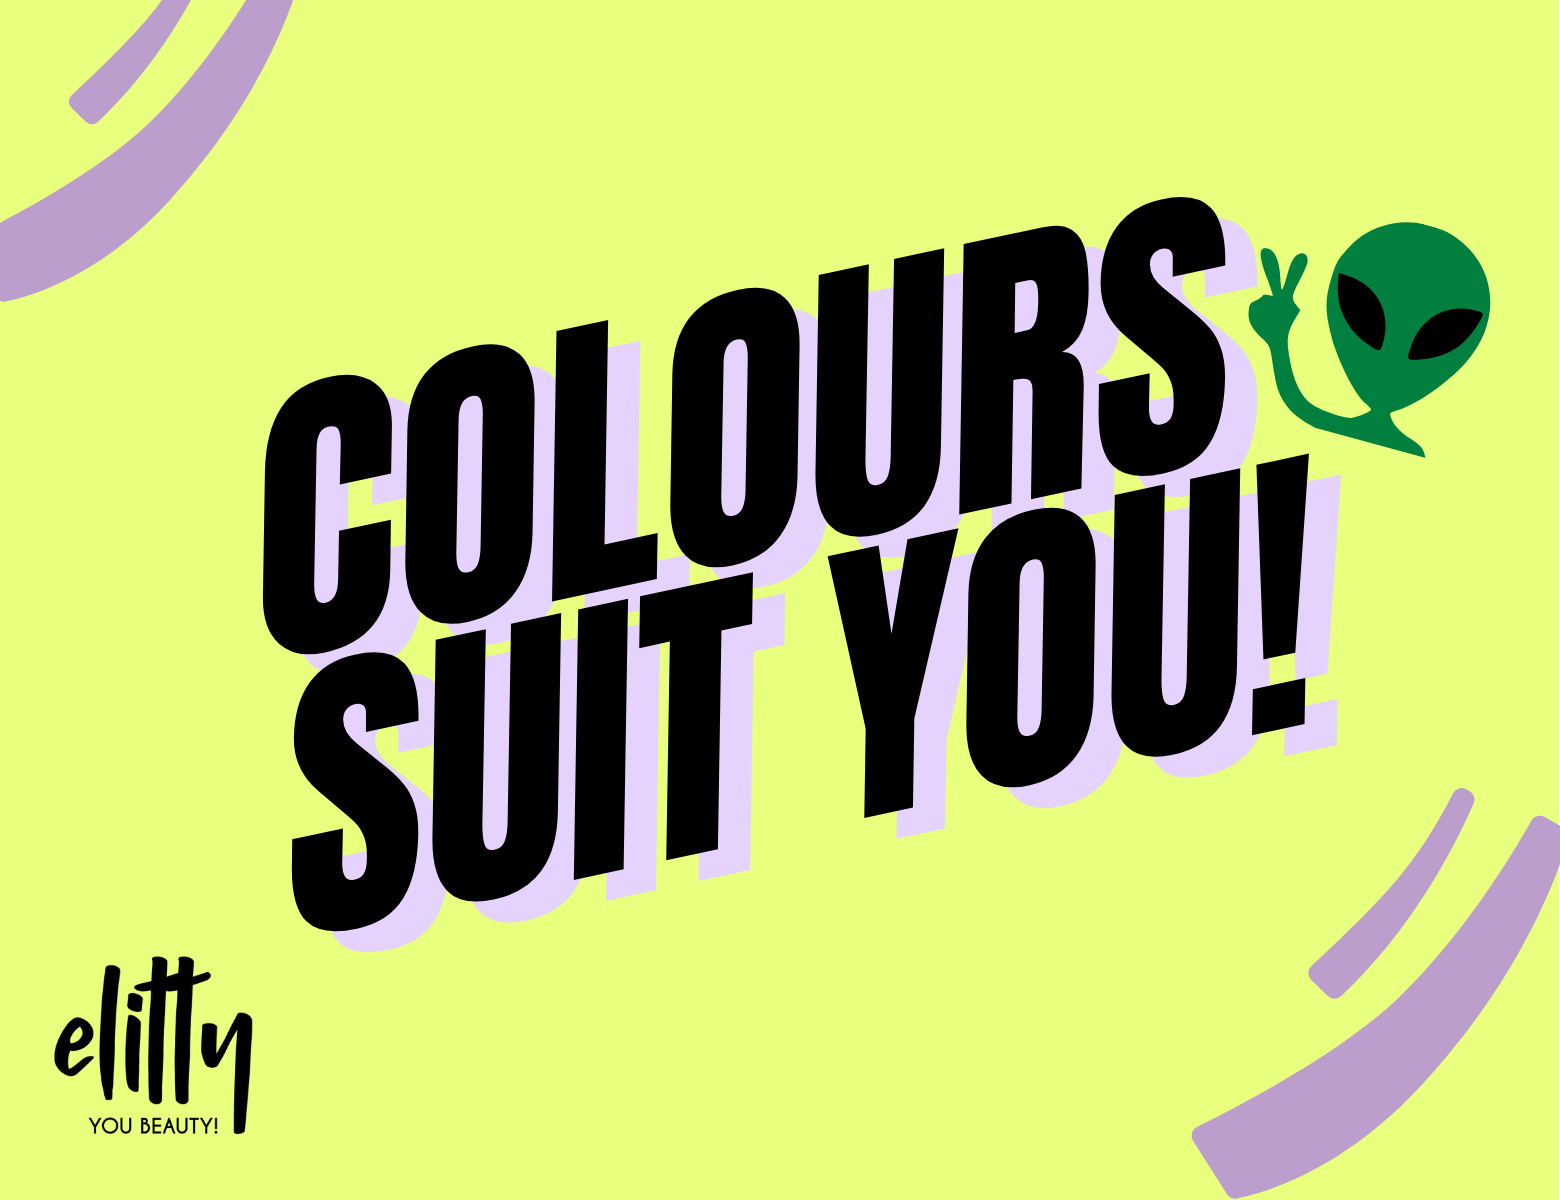 Colour suit you!